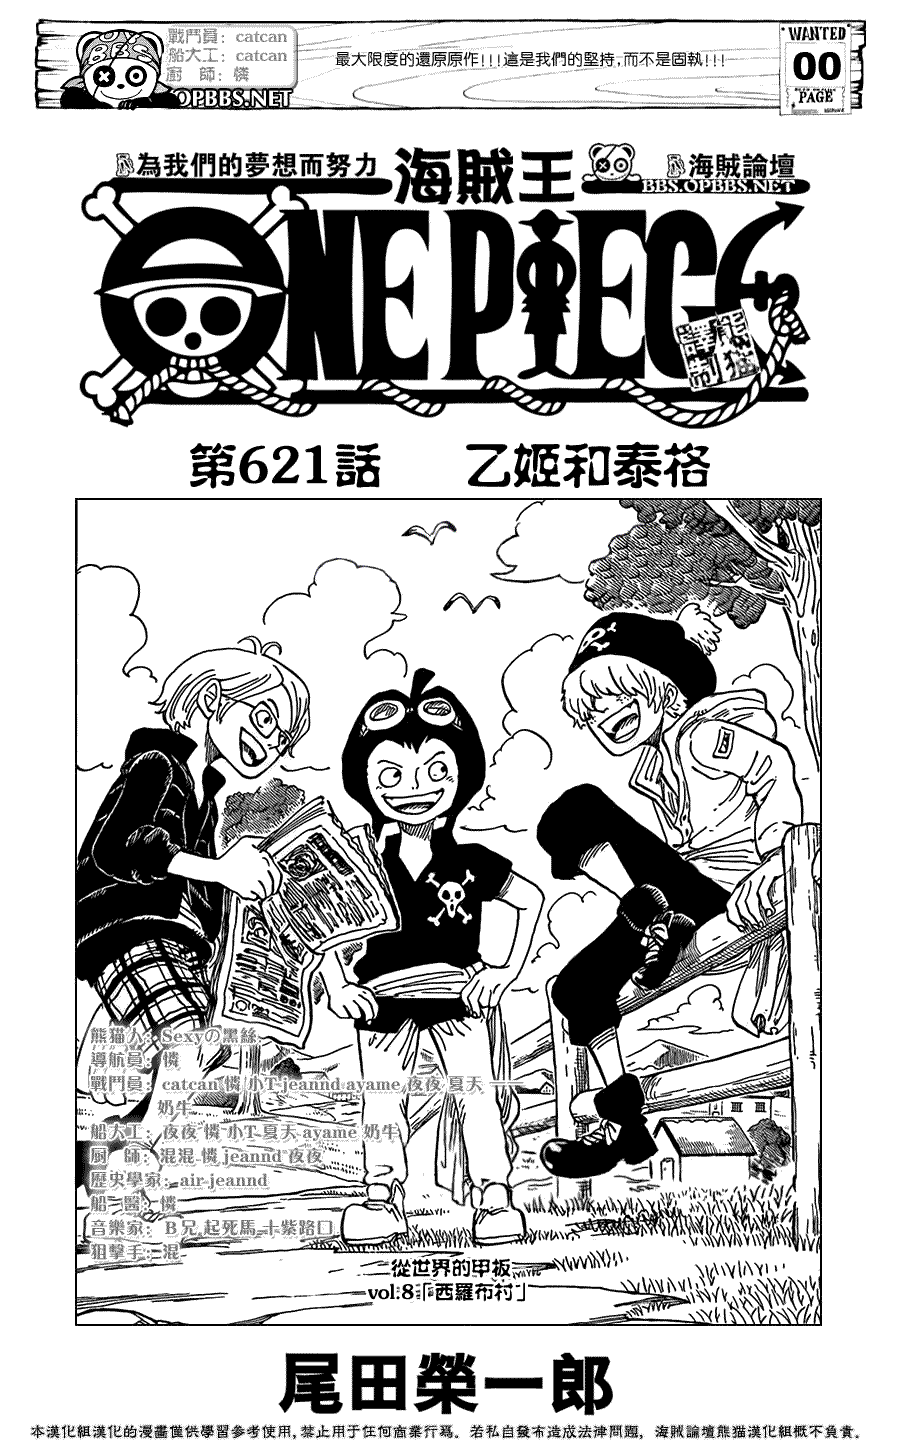 海贼王 One Piece 621话 海贼王 One Piece漫画 Sf在线漫画